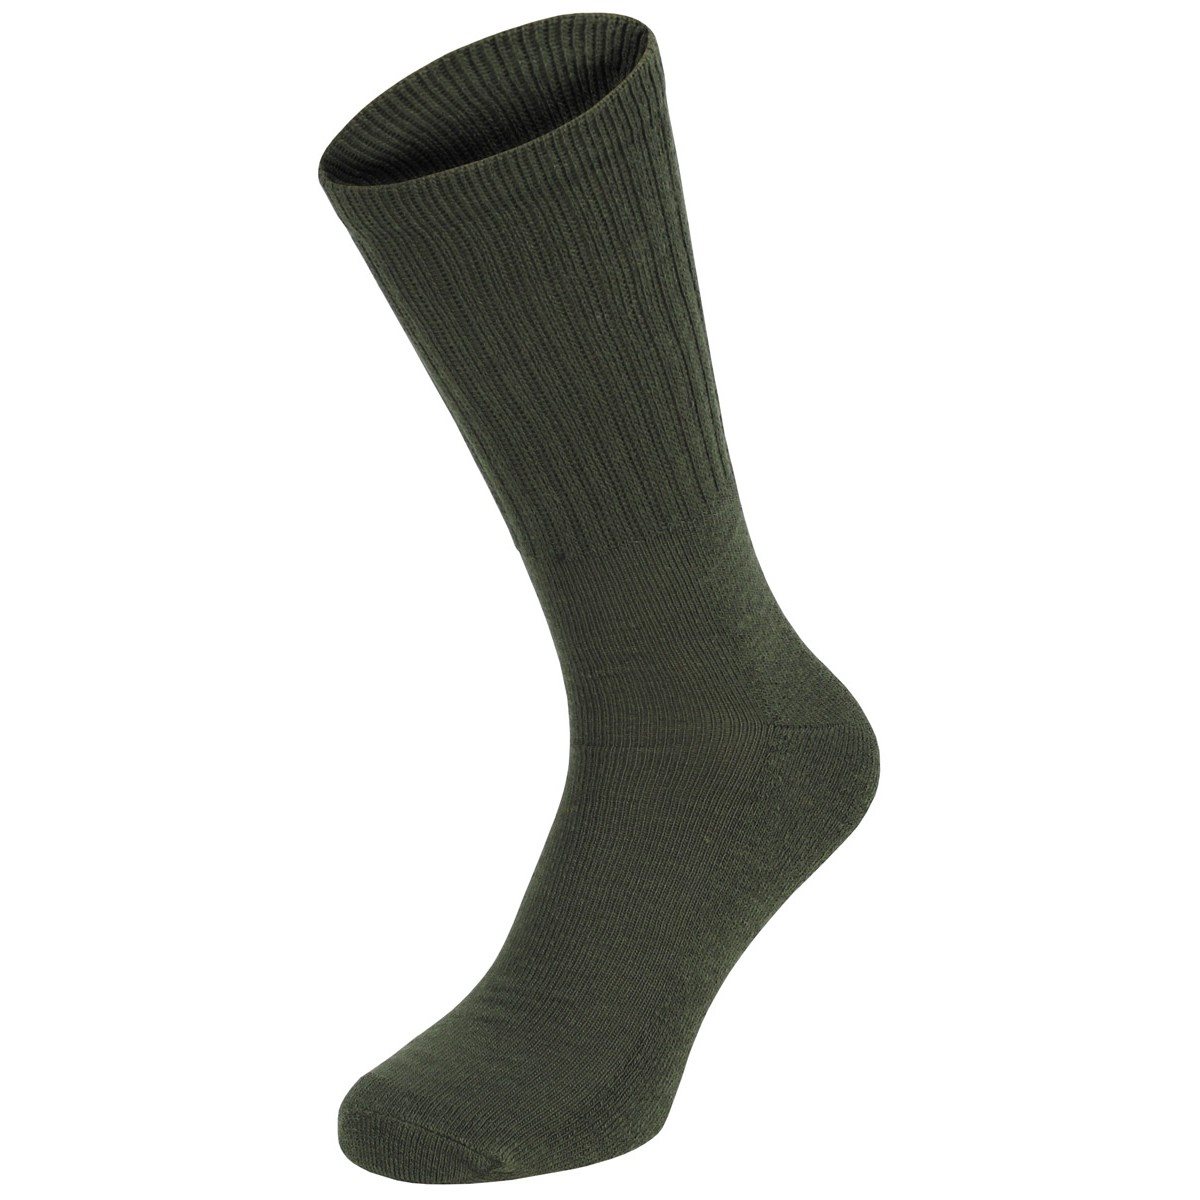 Ponožky ARMY středně vysoké ZELENÉ set 3-párů v balení